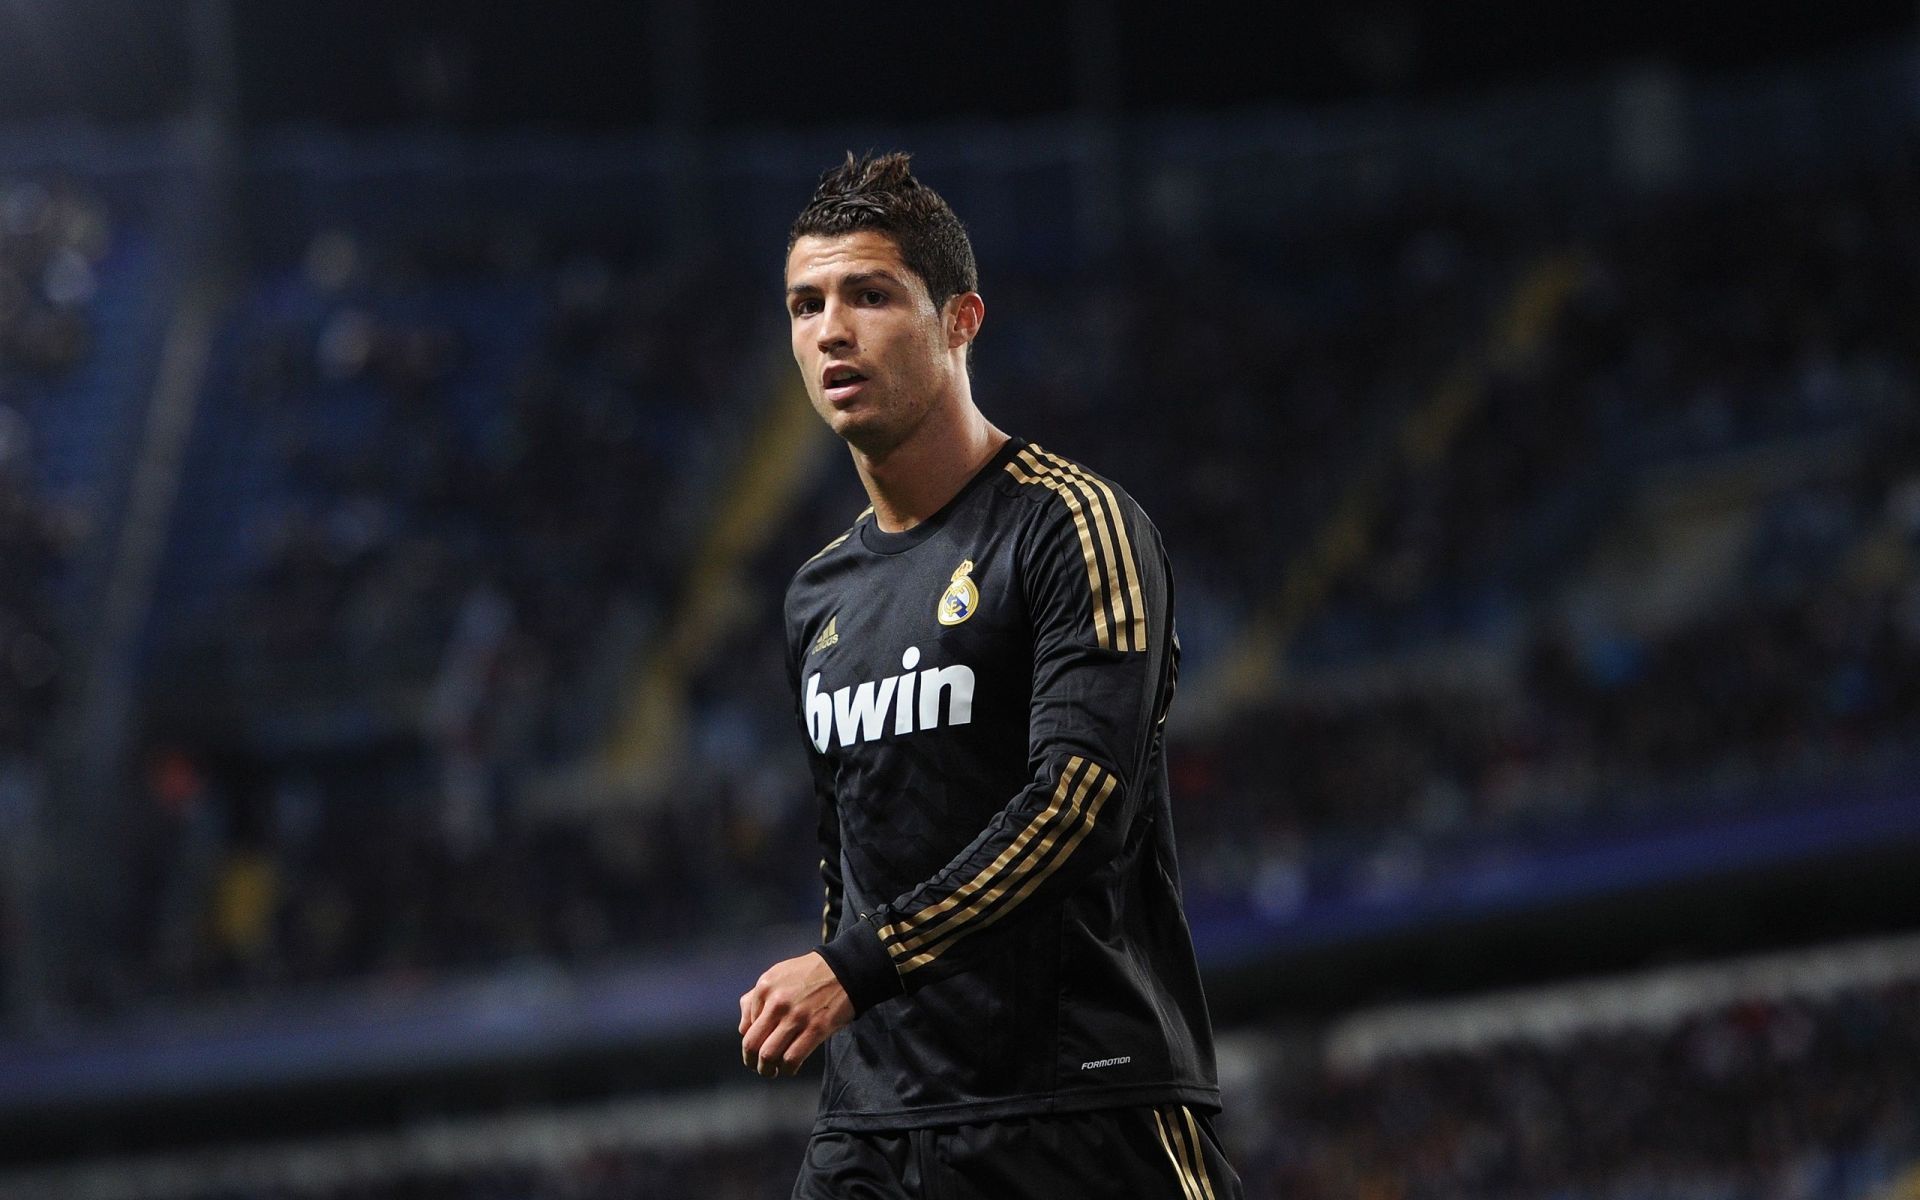 Cristiano Ronaldo during his first season at Real Madrid